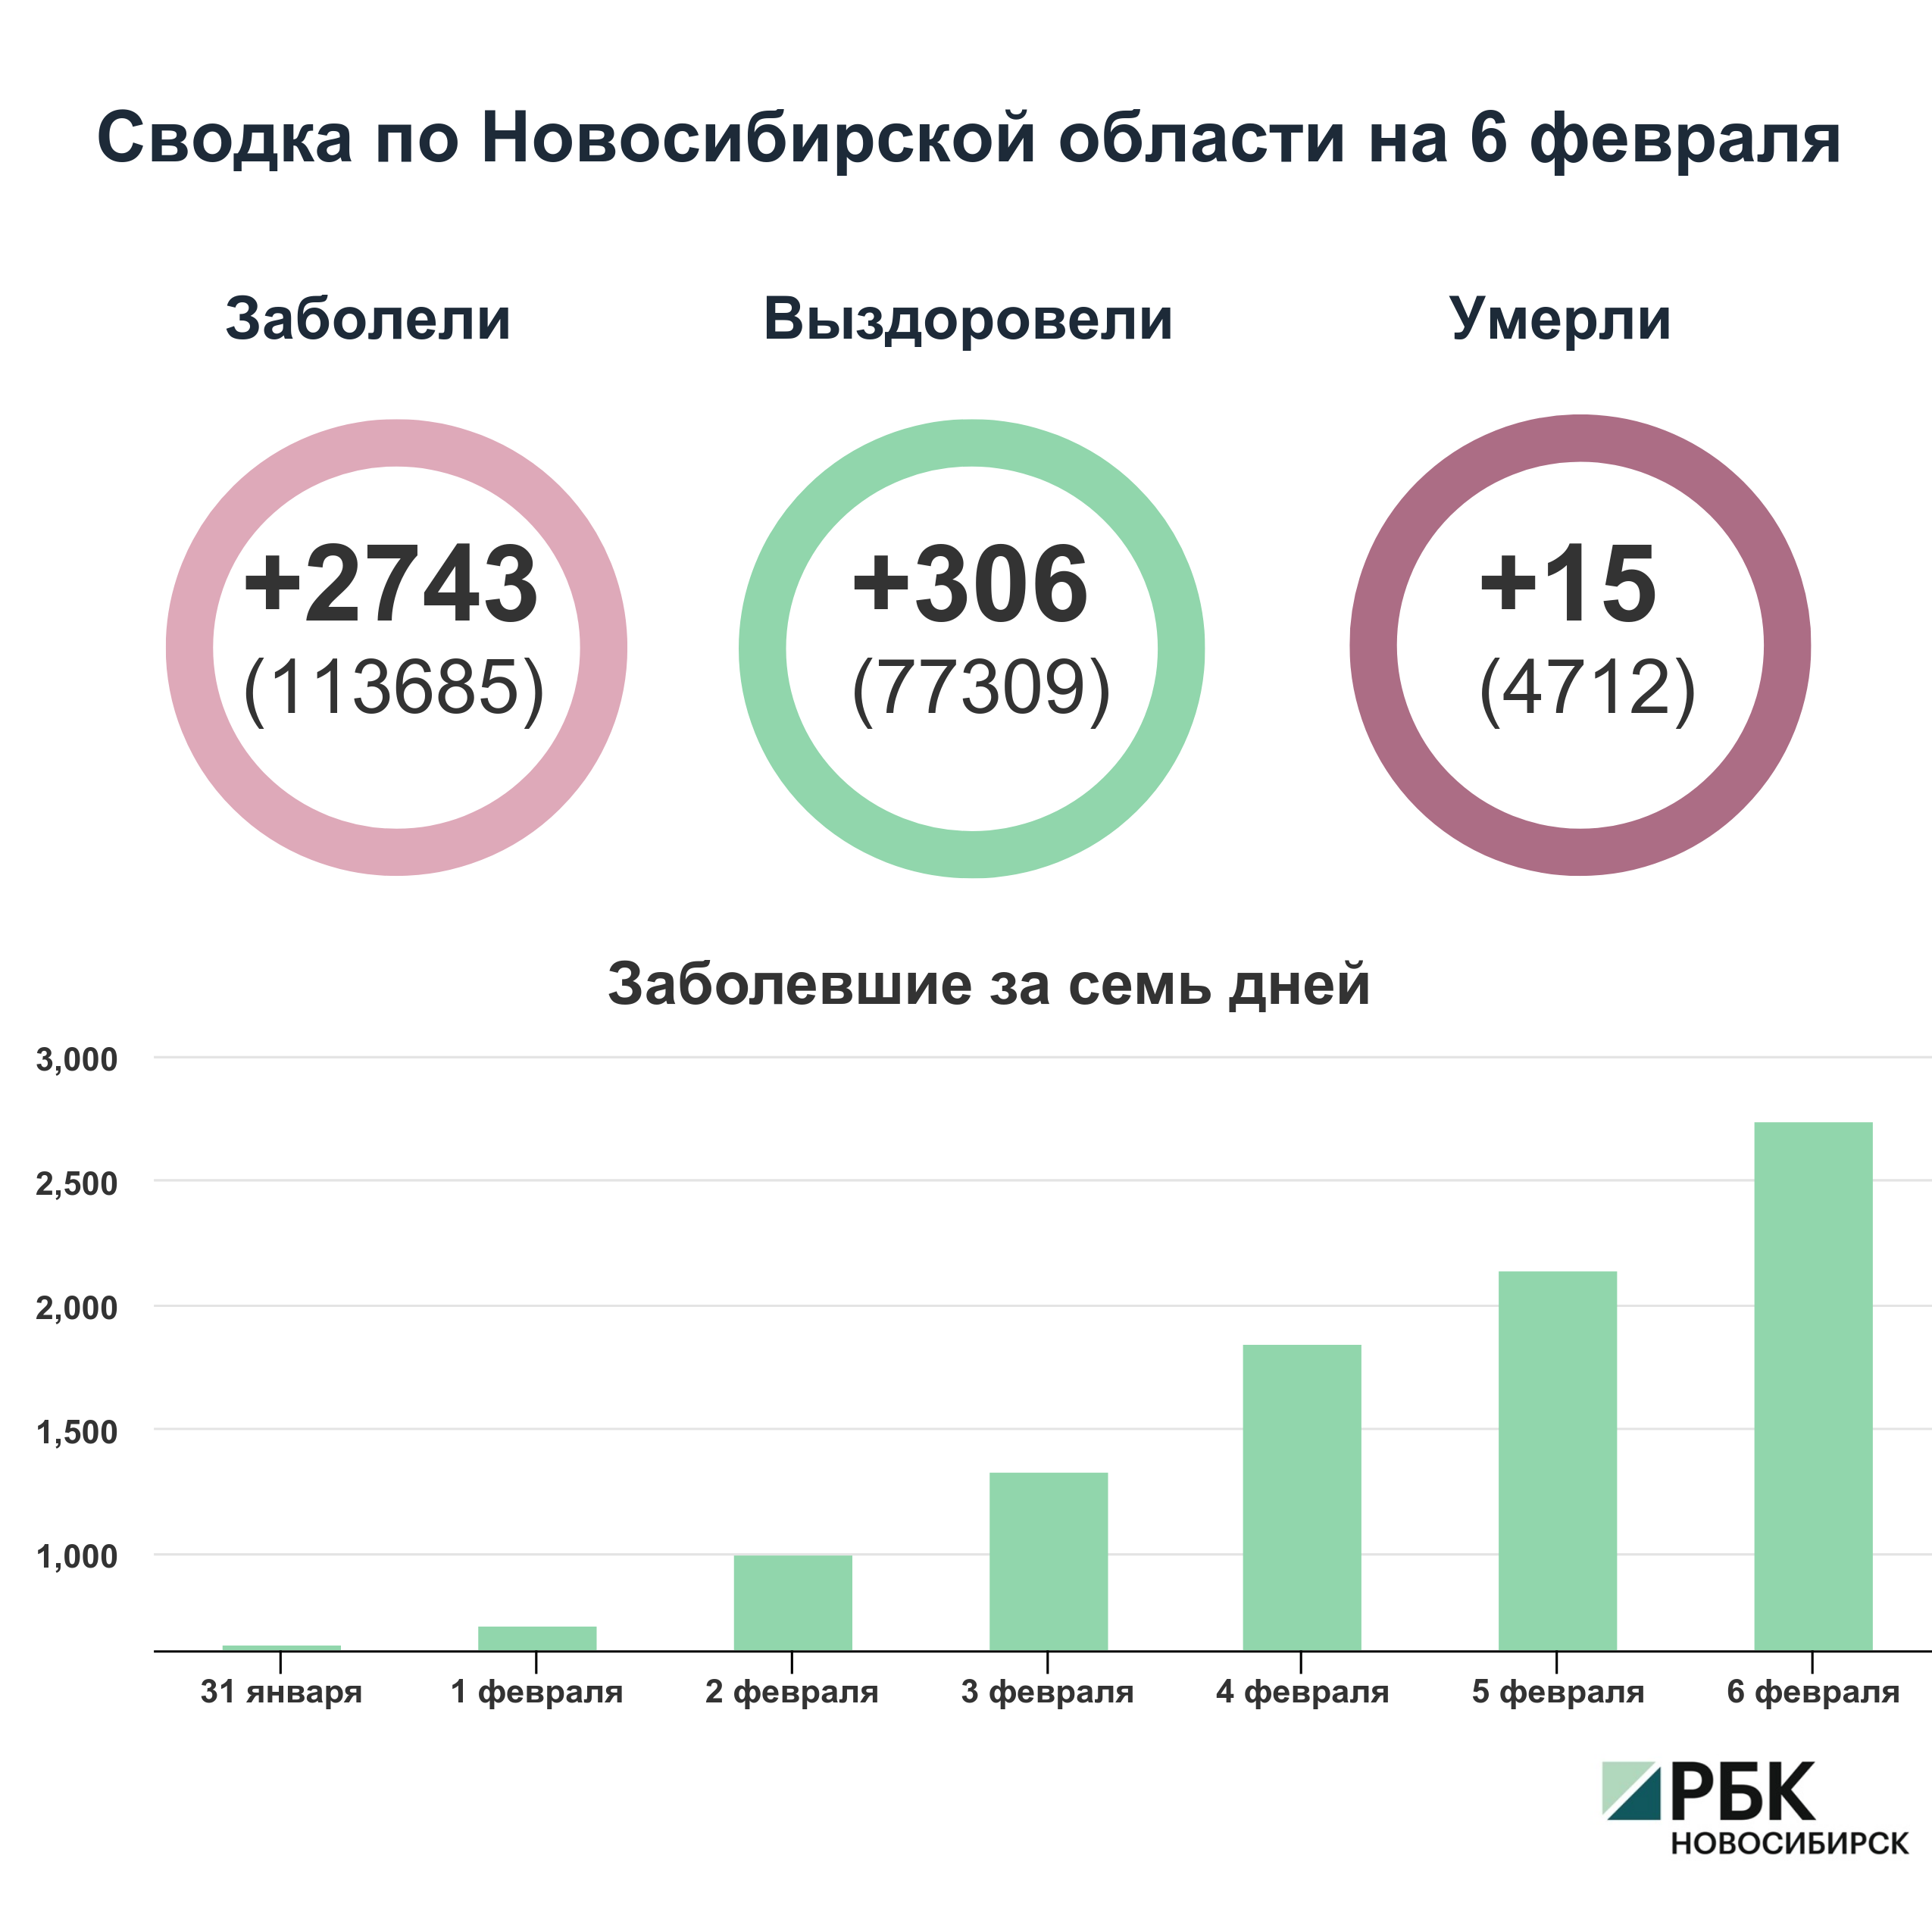 Коронавирус в Новосибирске: сводка на 6 февраля